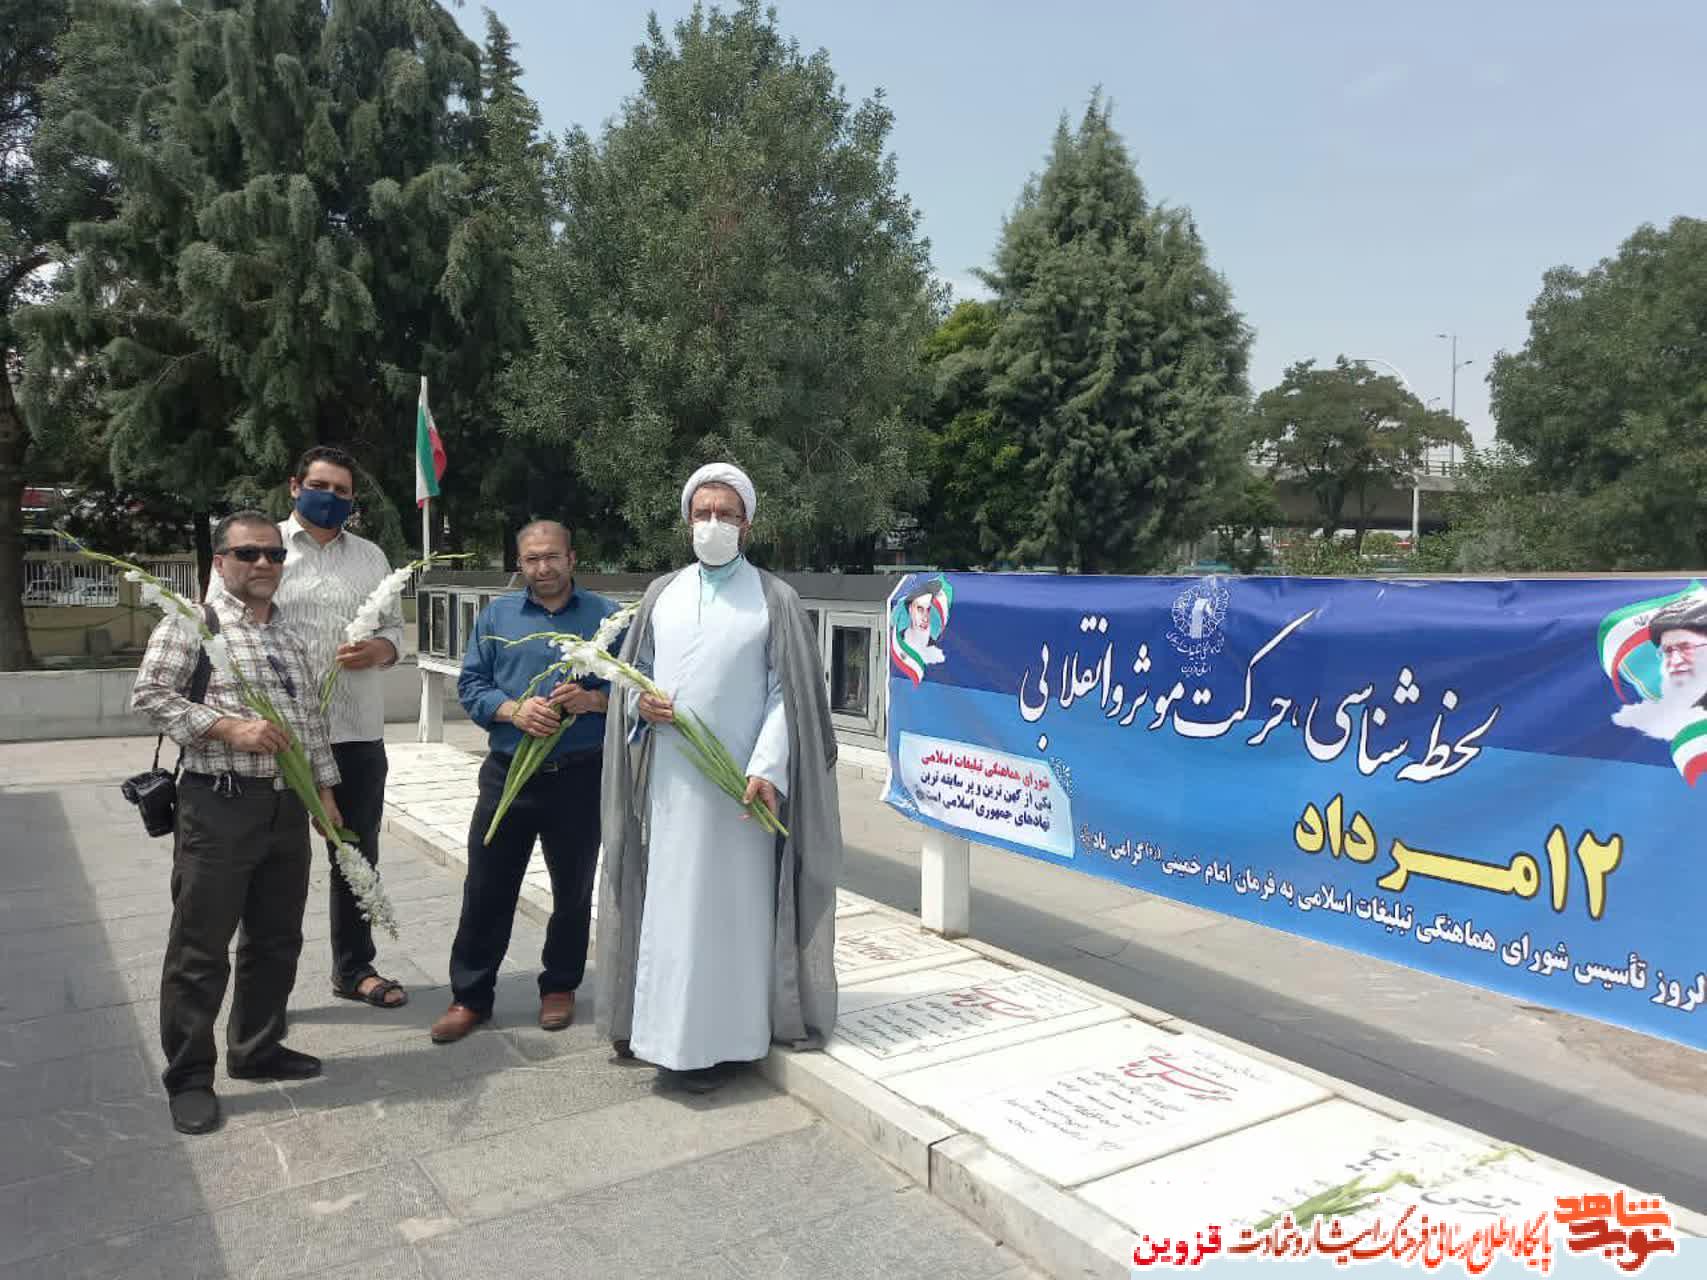 کارکنان شورای هماهنگی تبلیغات قزوین به مقام شهدا ادای احترام کردند